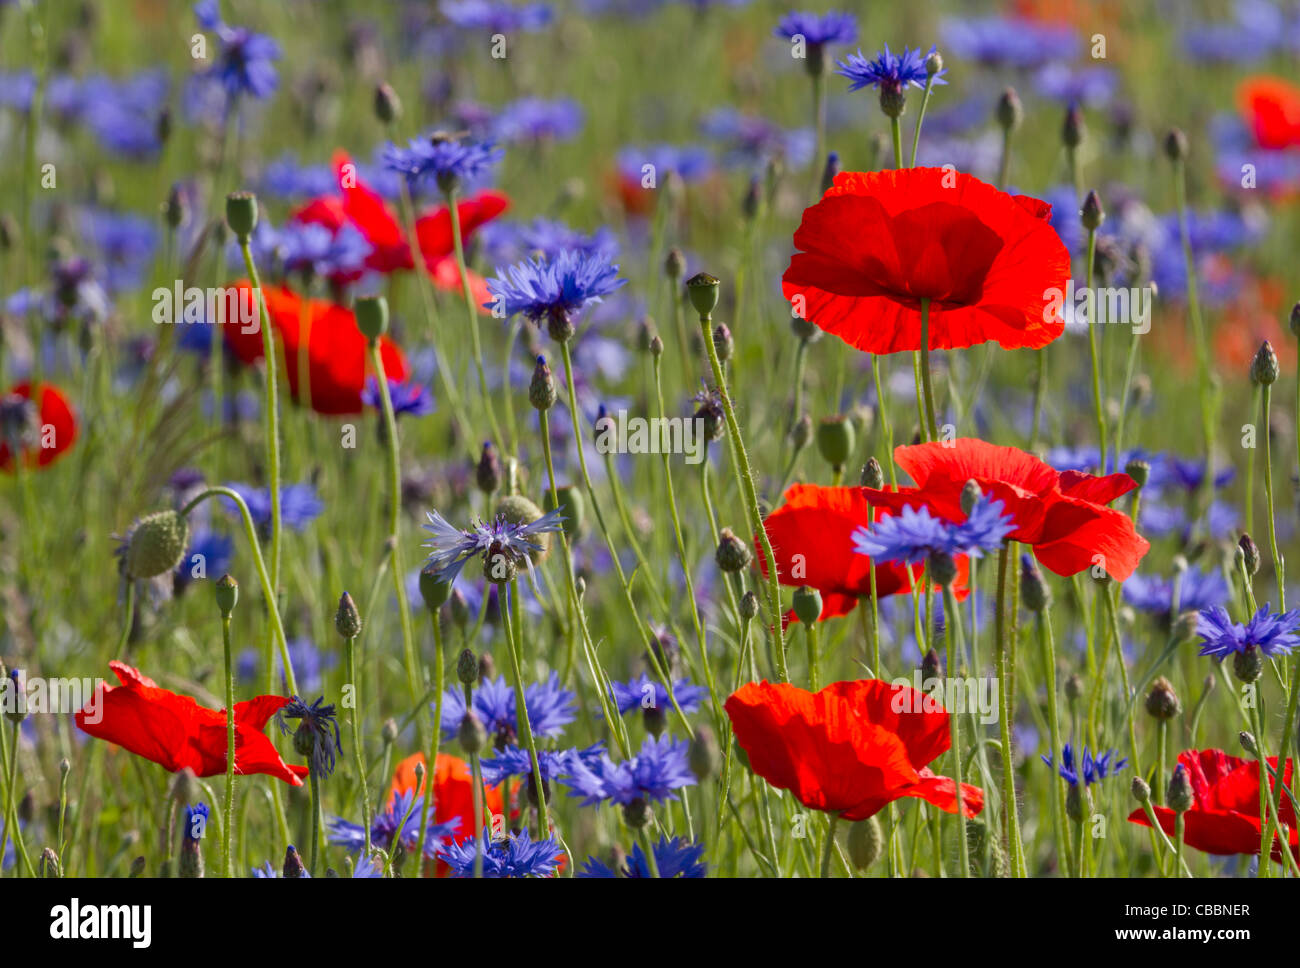 Poppy field with cornflowers Stock Photo